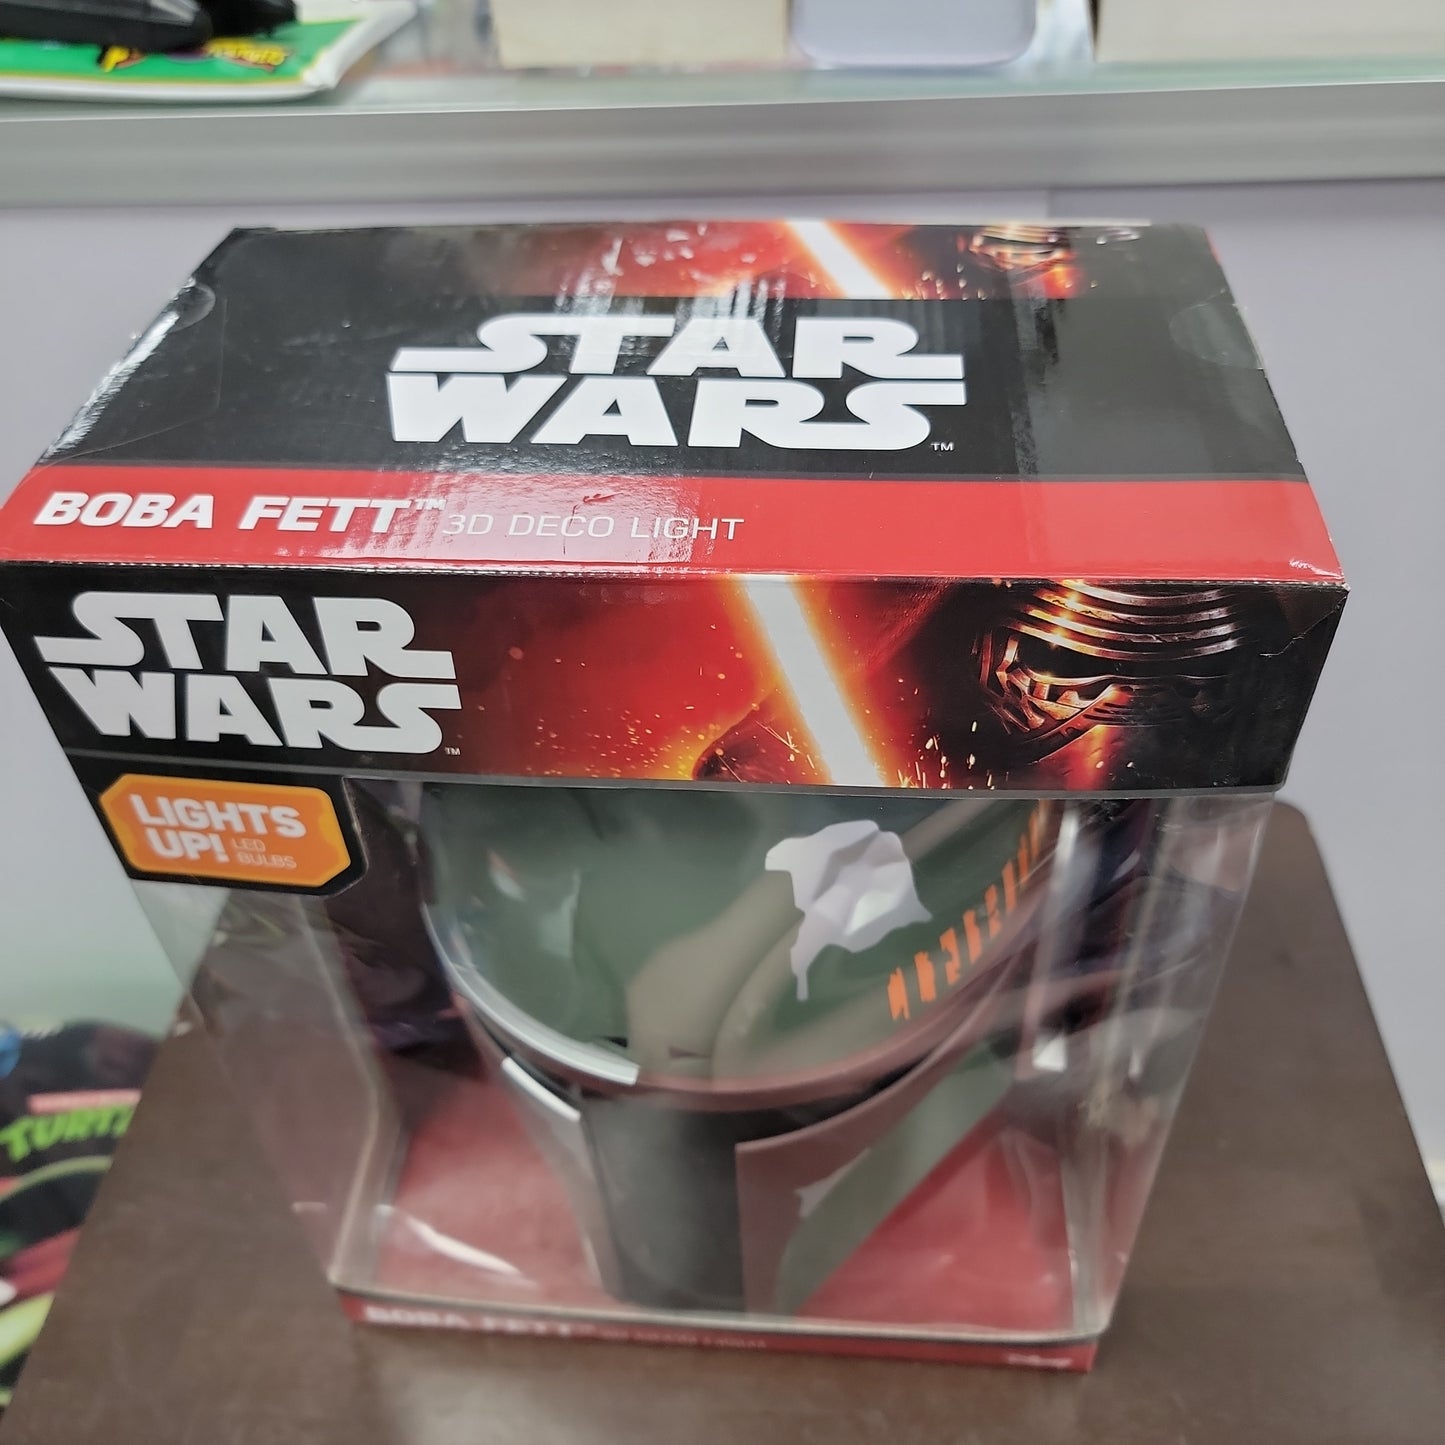 Star Wars Boba Fett 3D Deco Light